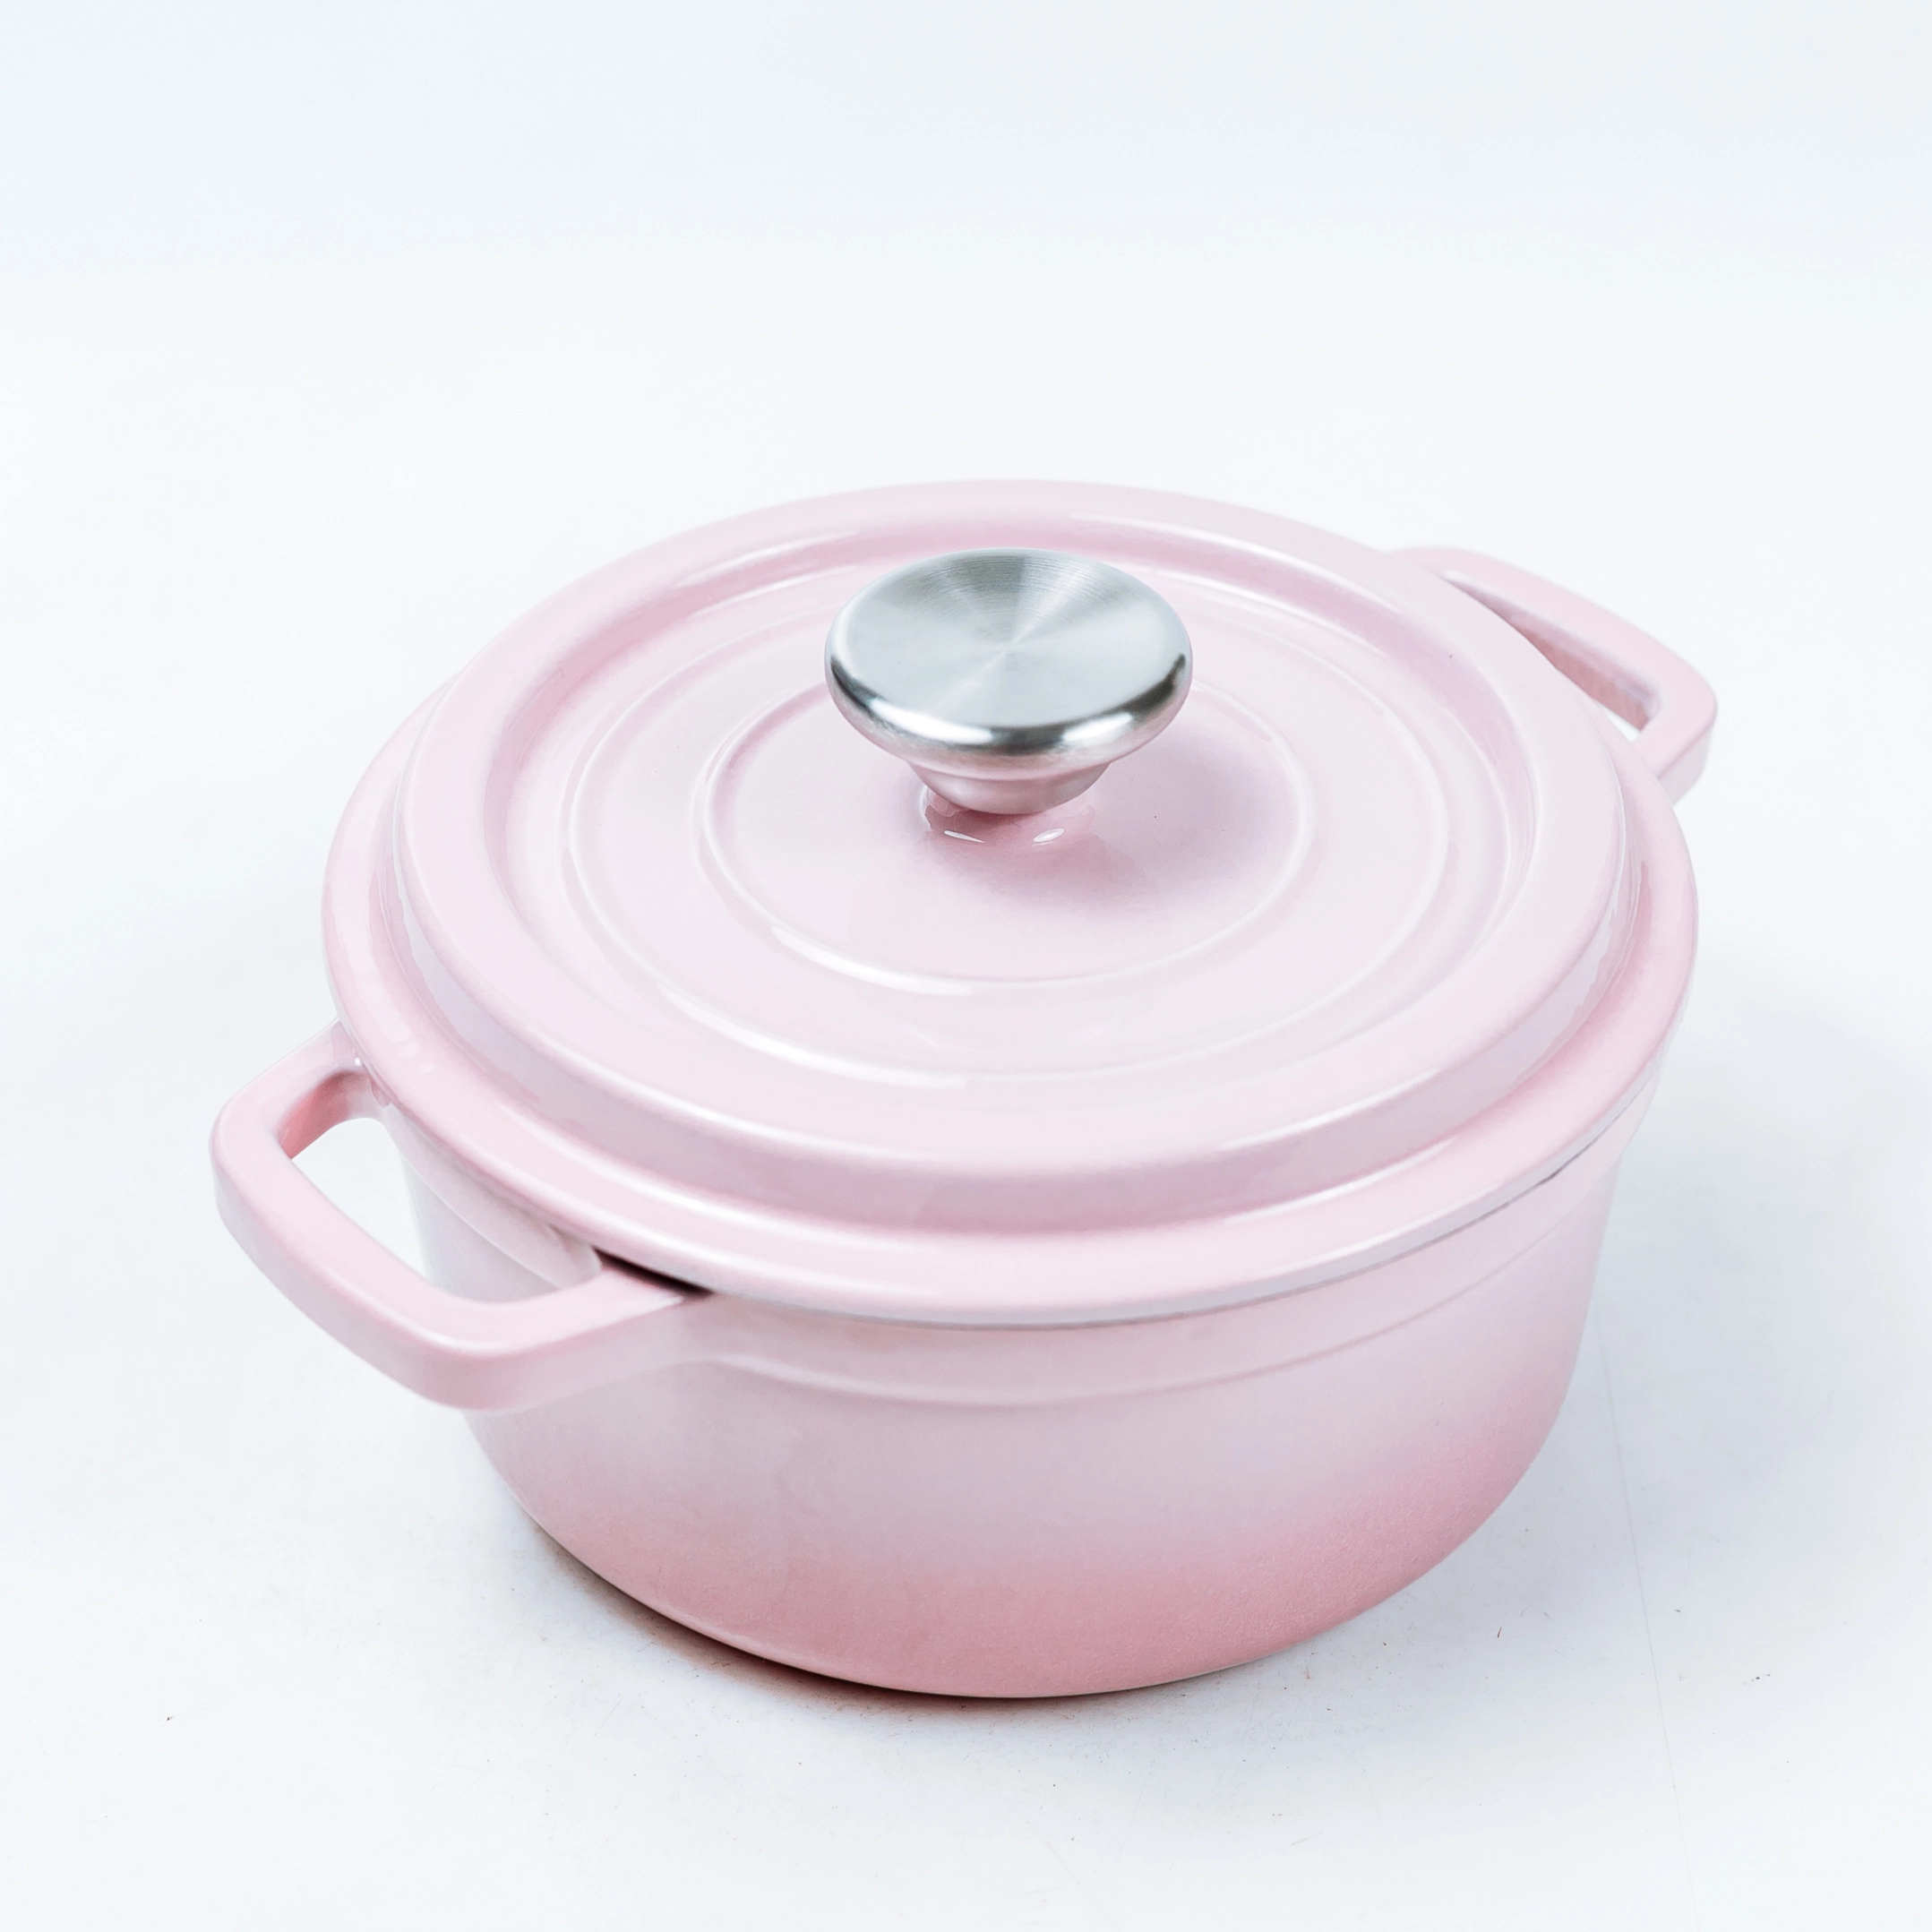 Cazuela redonda de hierro fundido con revestimiento esmaltado rosa para horno